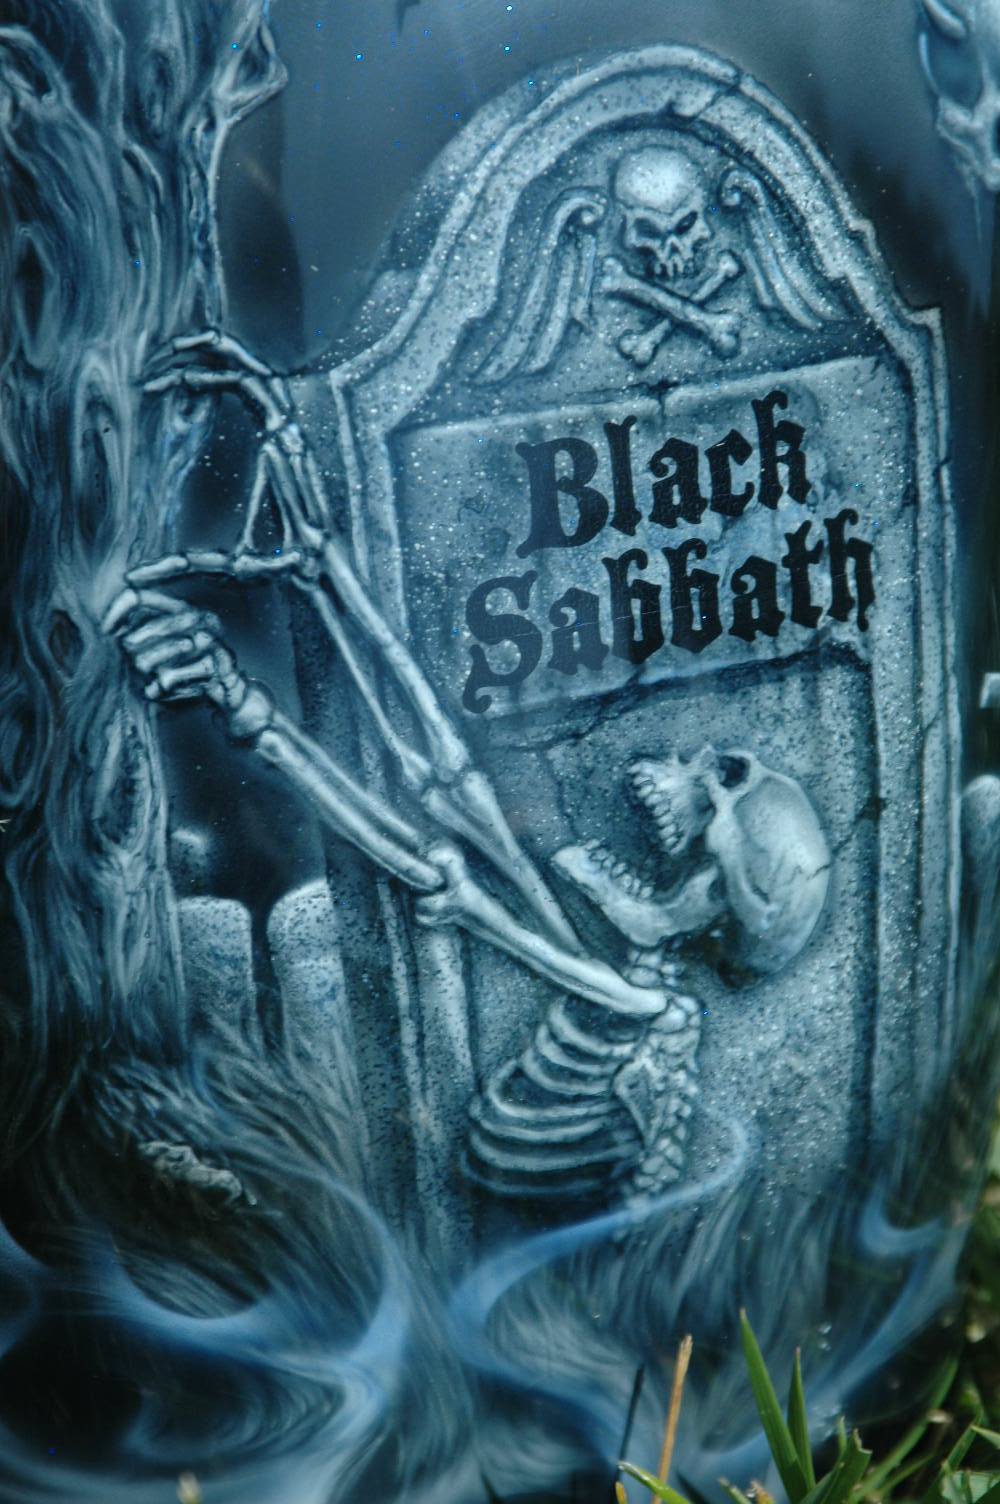 Black Sabbath motorcycle